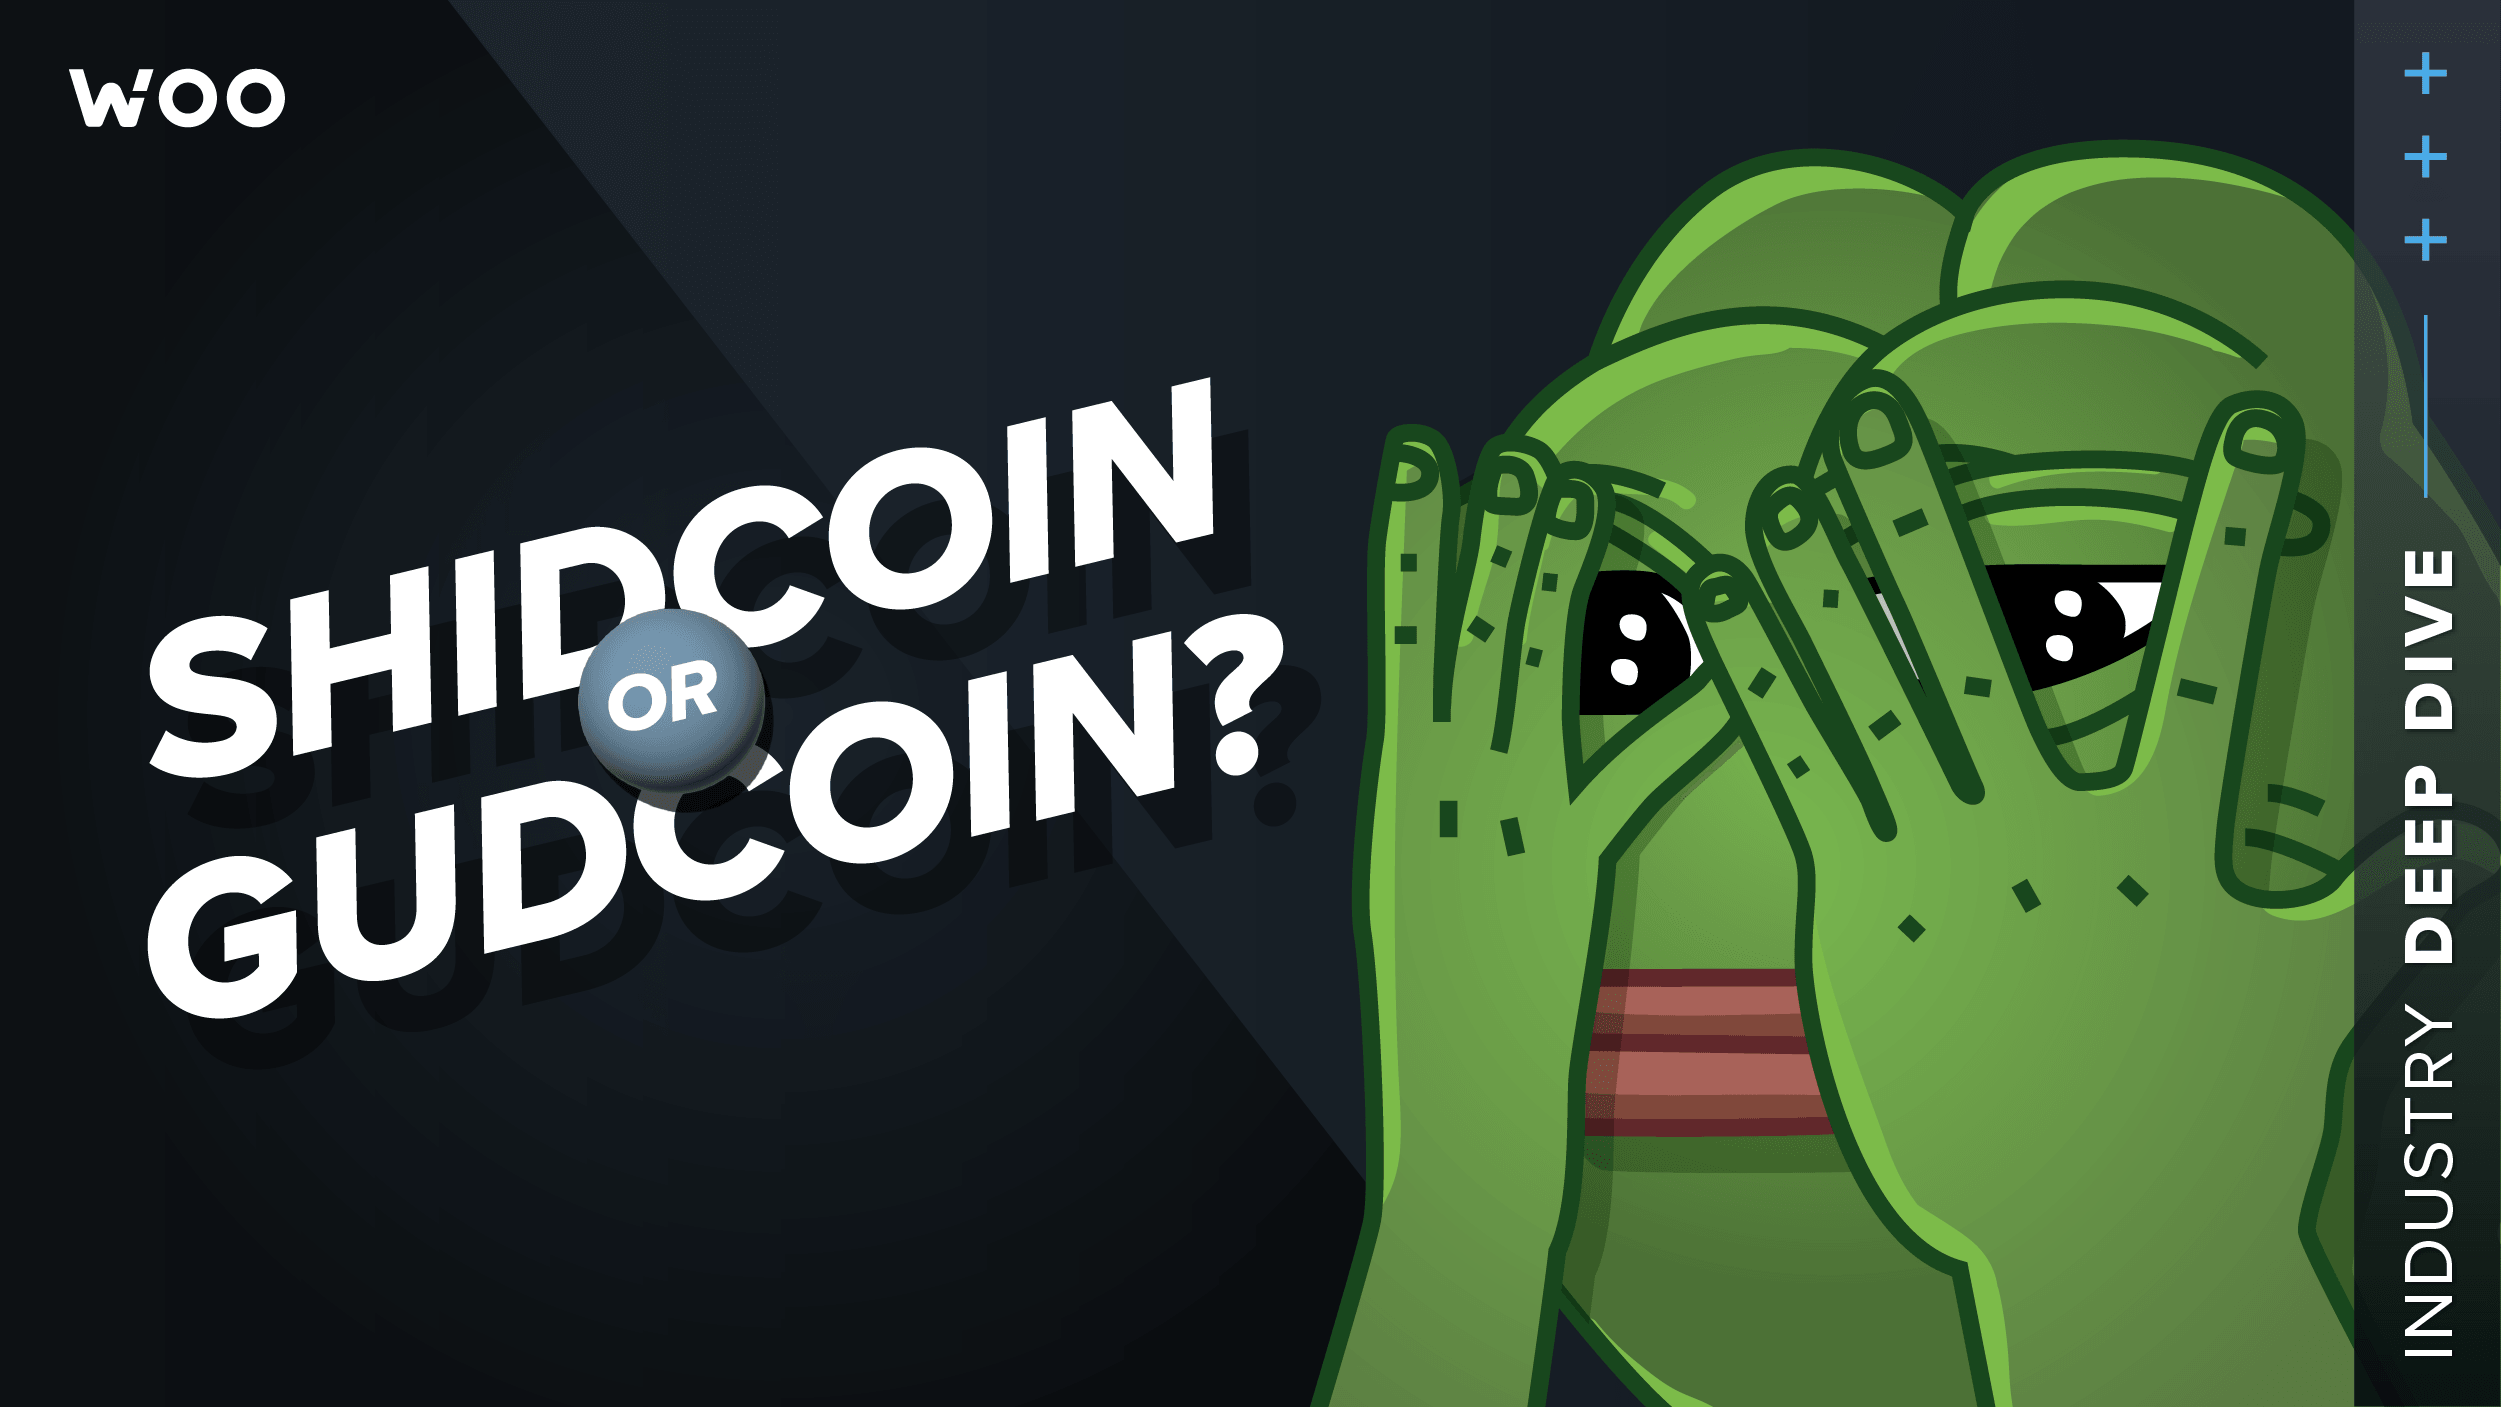 Celestia: Shidcoin or gudcoin?